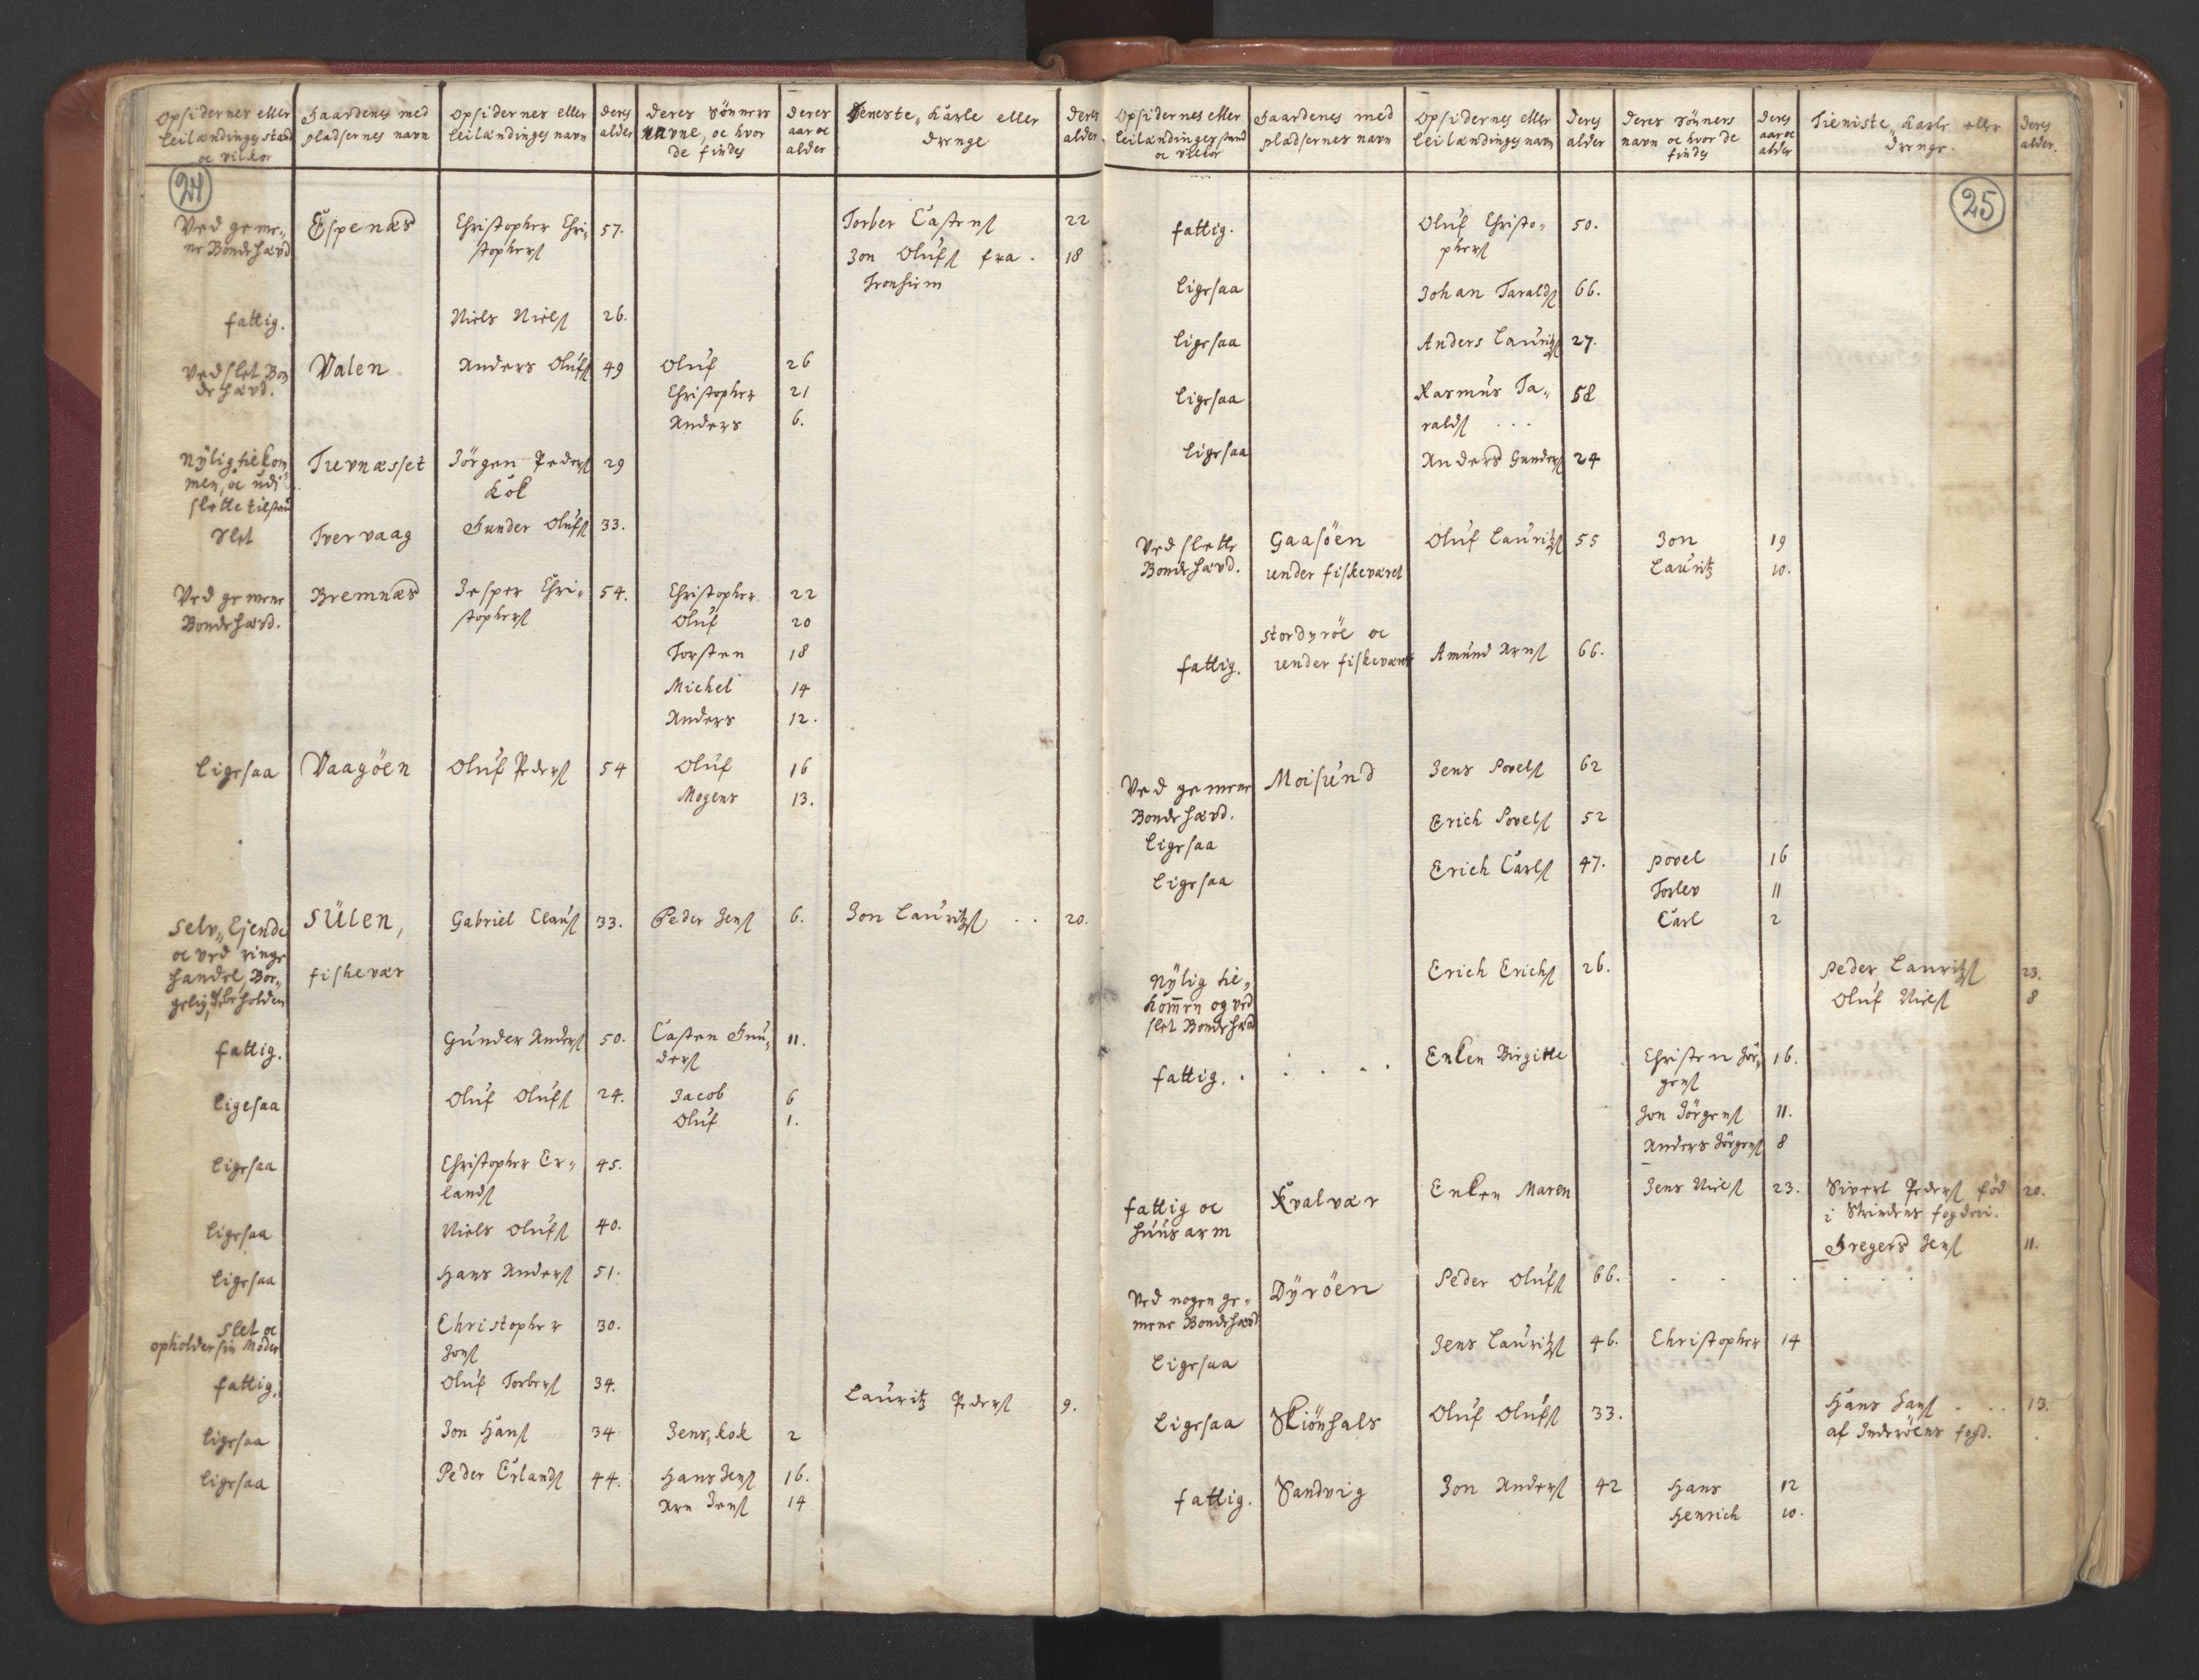 RA, Manntallet 1701, nr. 12: Fosen fogderi, 1701, s. 24-25